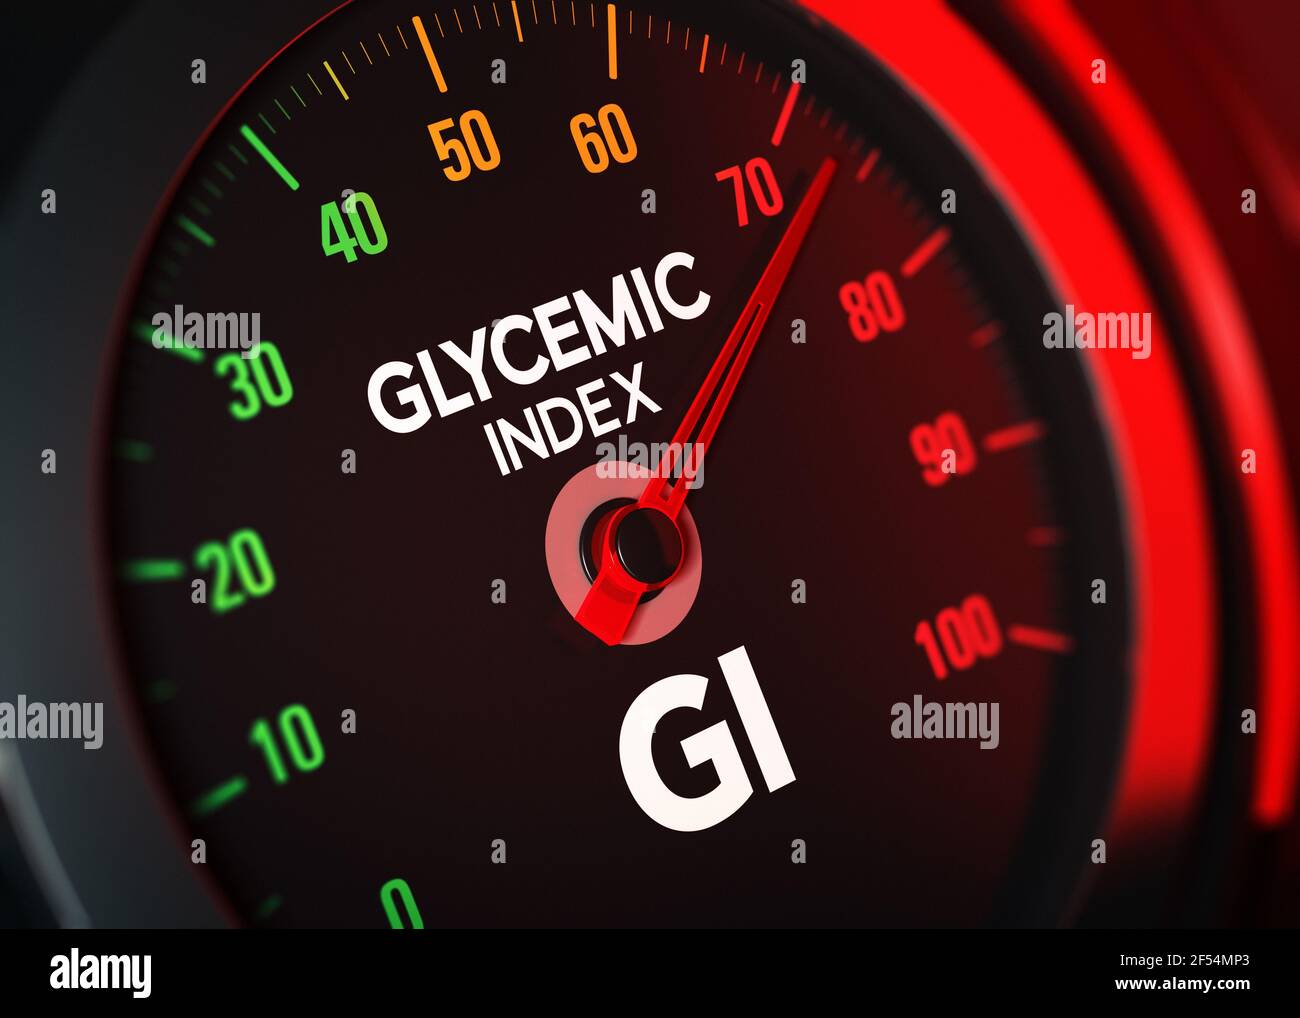 Illustration 3D d'un compteur GI conceptuel qui mesure l'indice glycémique sur une échelle de 0 à 100. Banque D'Images